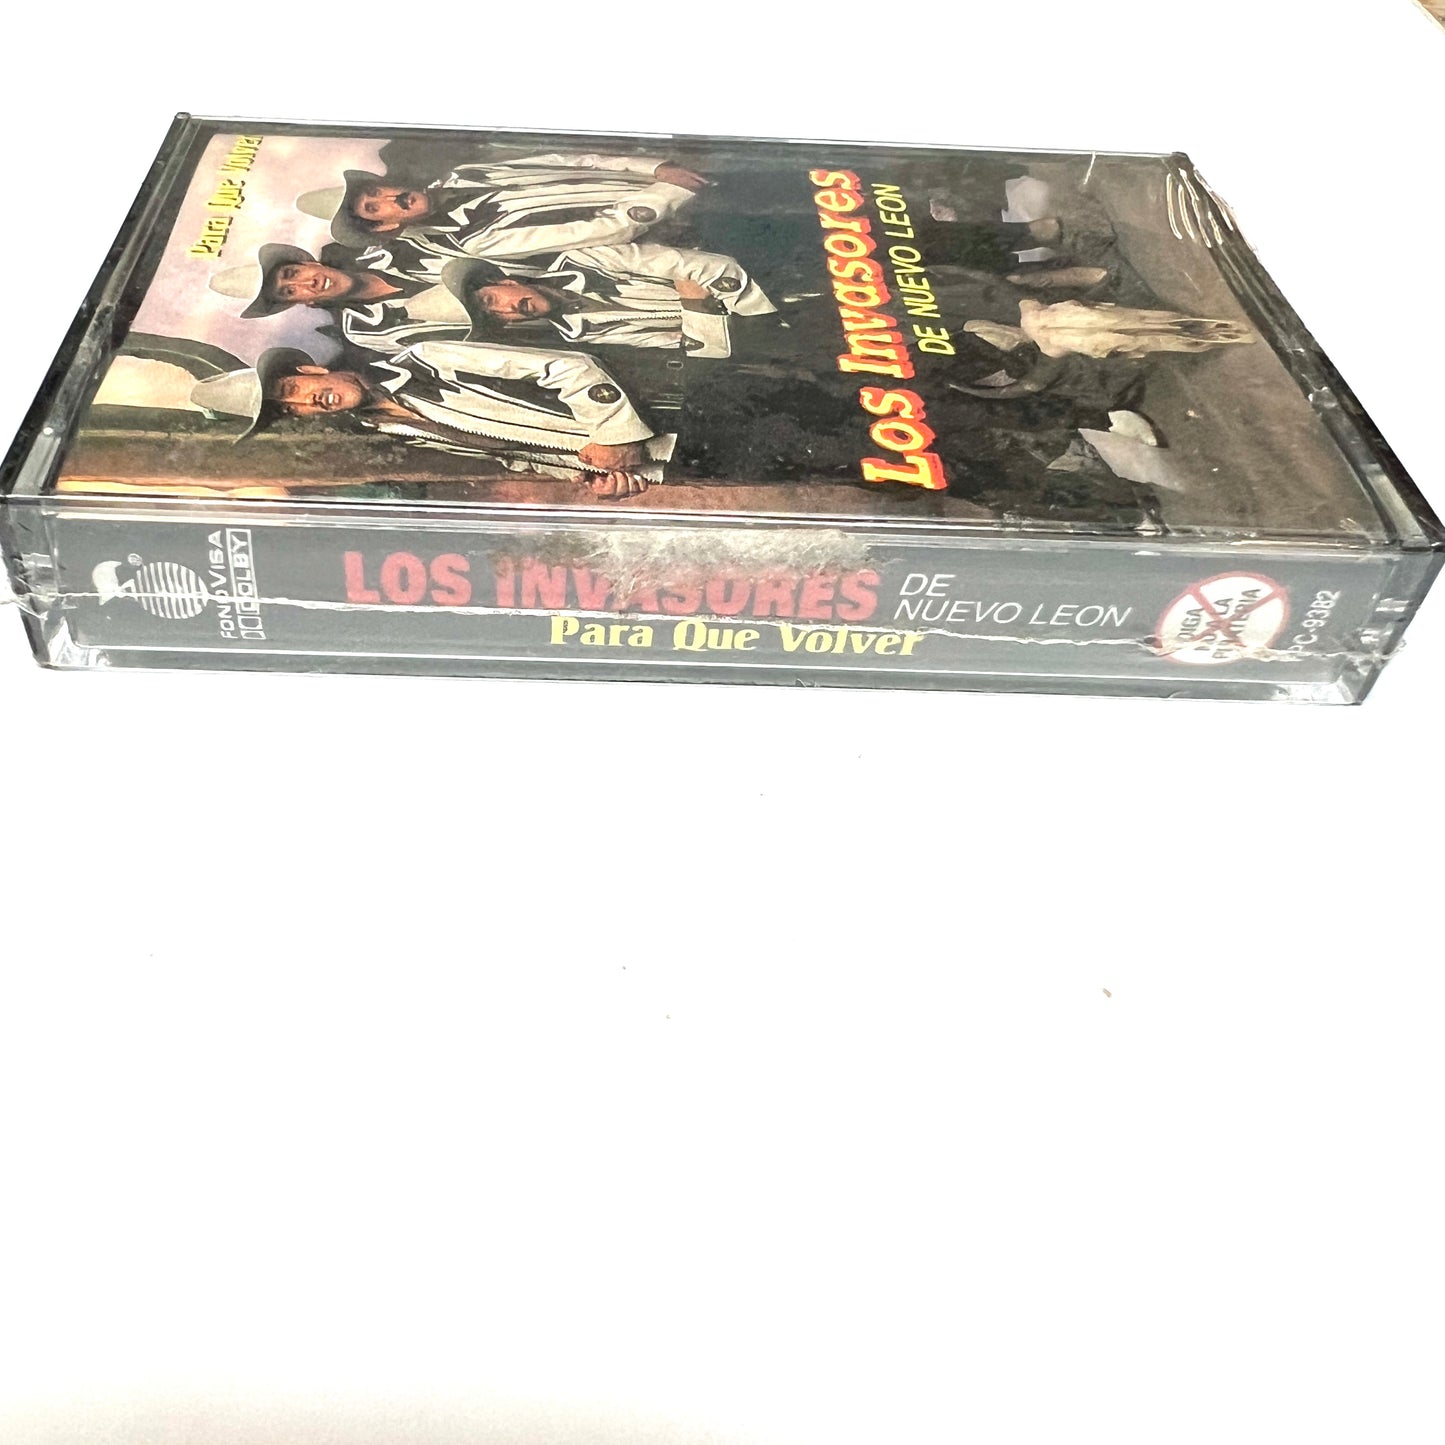 Los Invasores De Nuevo Leon - Para Que Volver (Cassette)